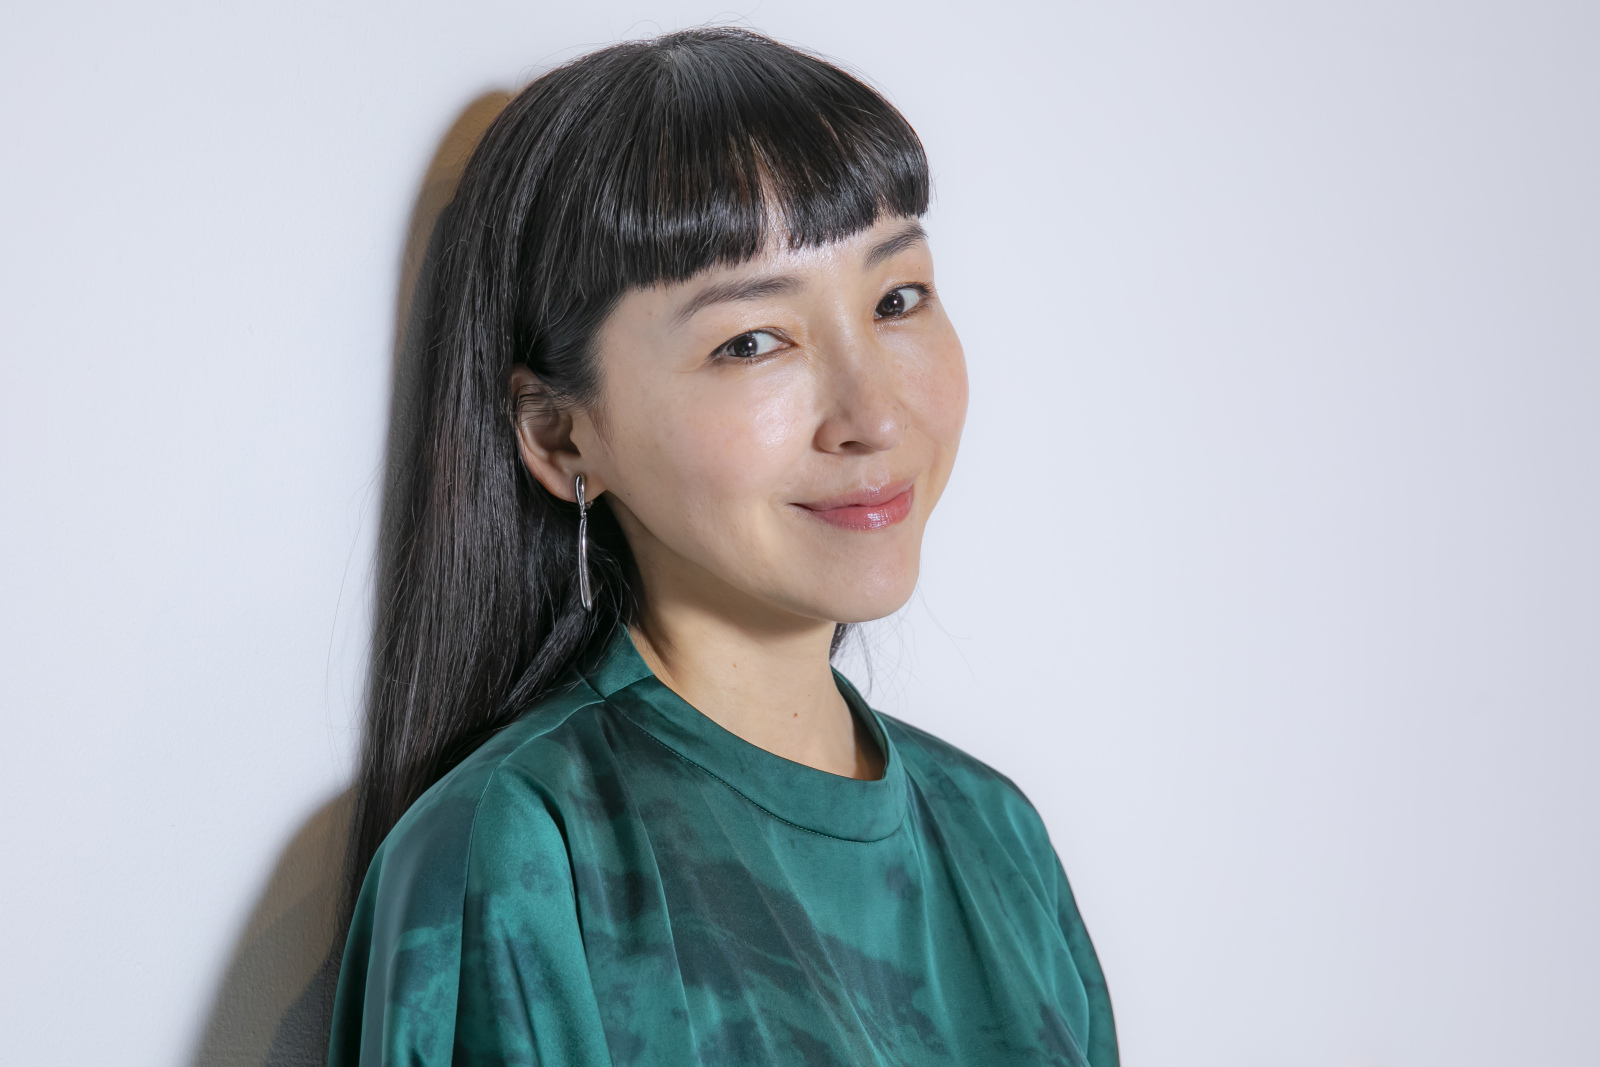 麻生久美子さん「生きていることが幸せ。当たり前じゃない。」子育て・仕事・人間関係についてインタビュー